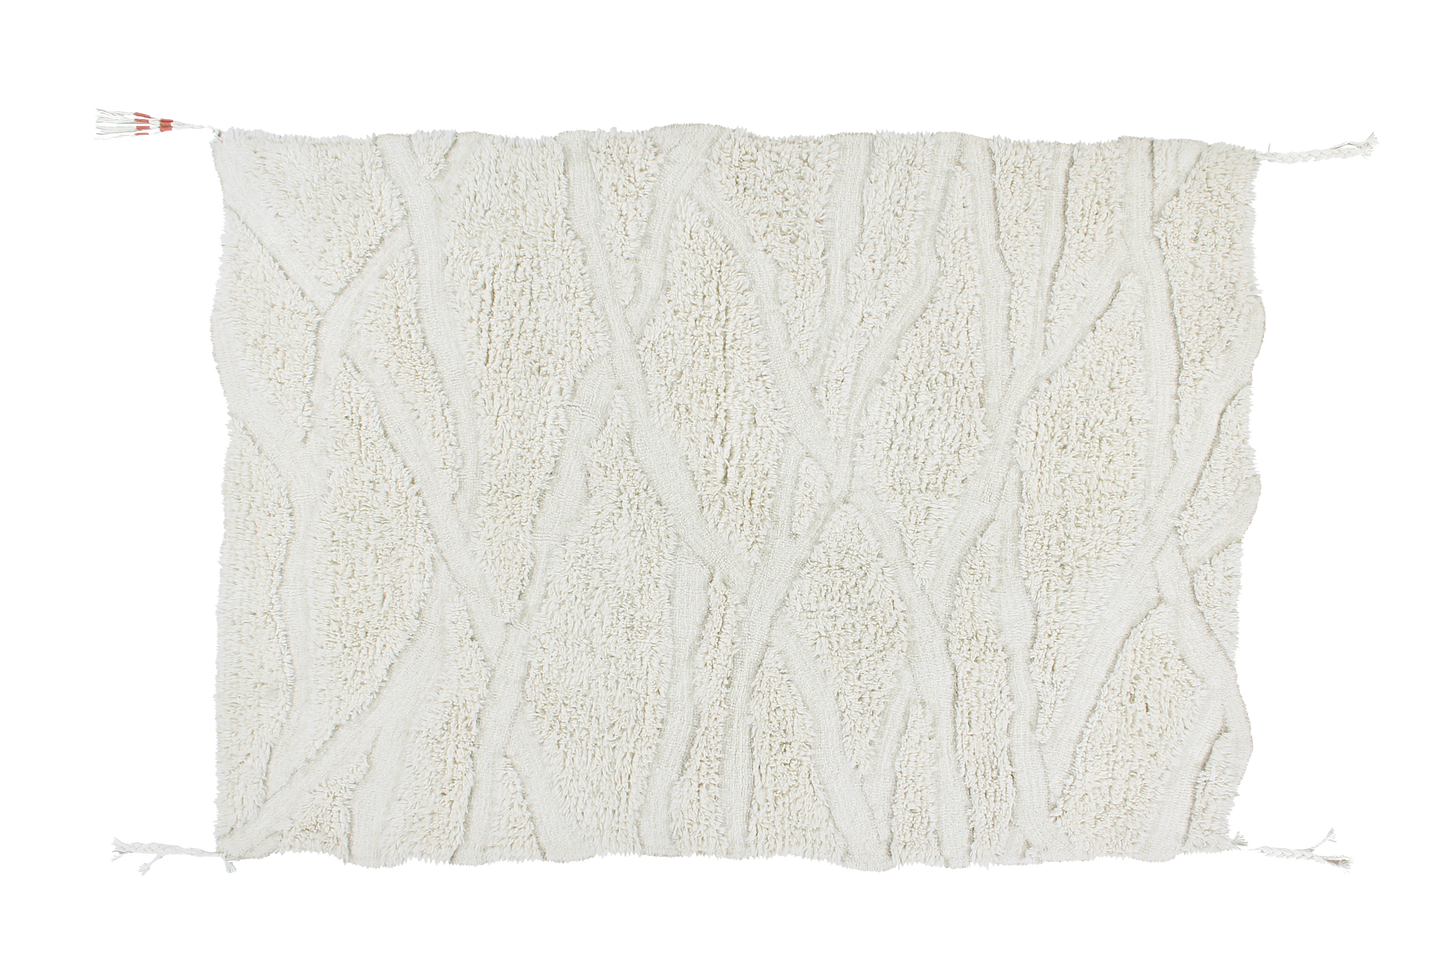 Enkang XL woolable washable rug- Ivory